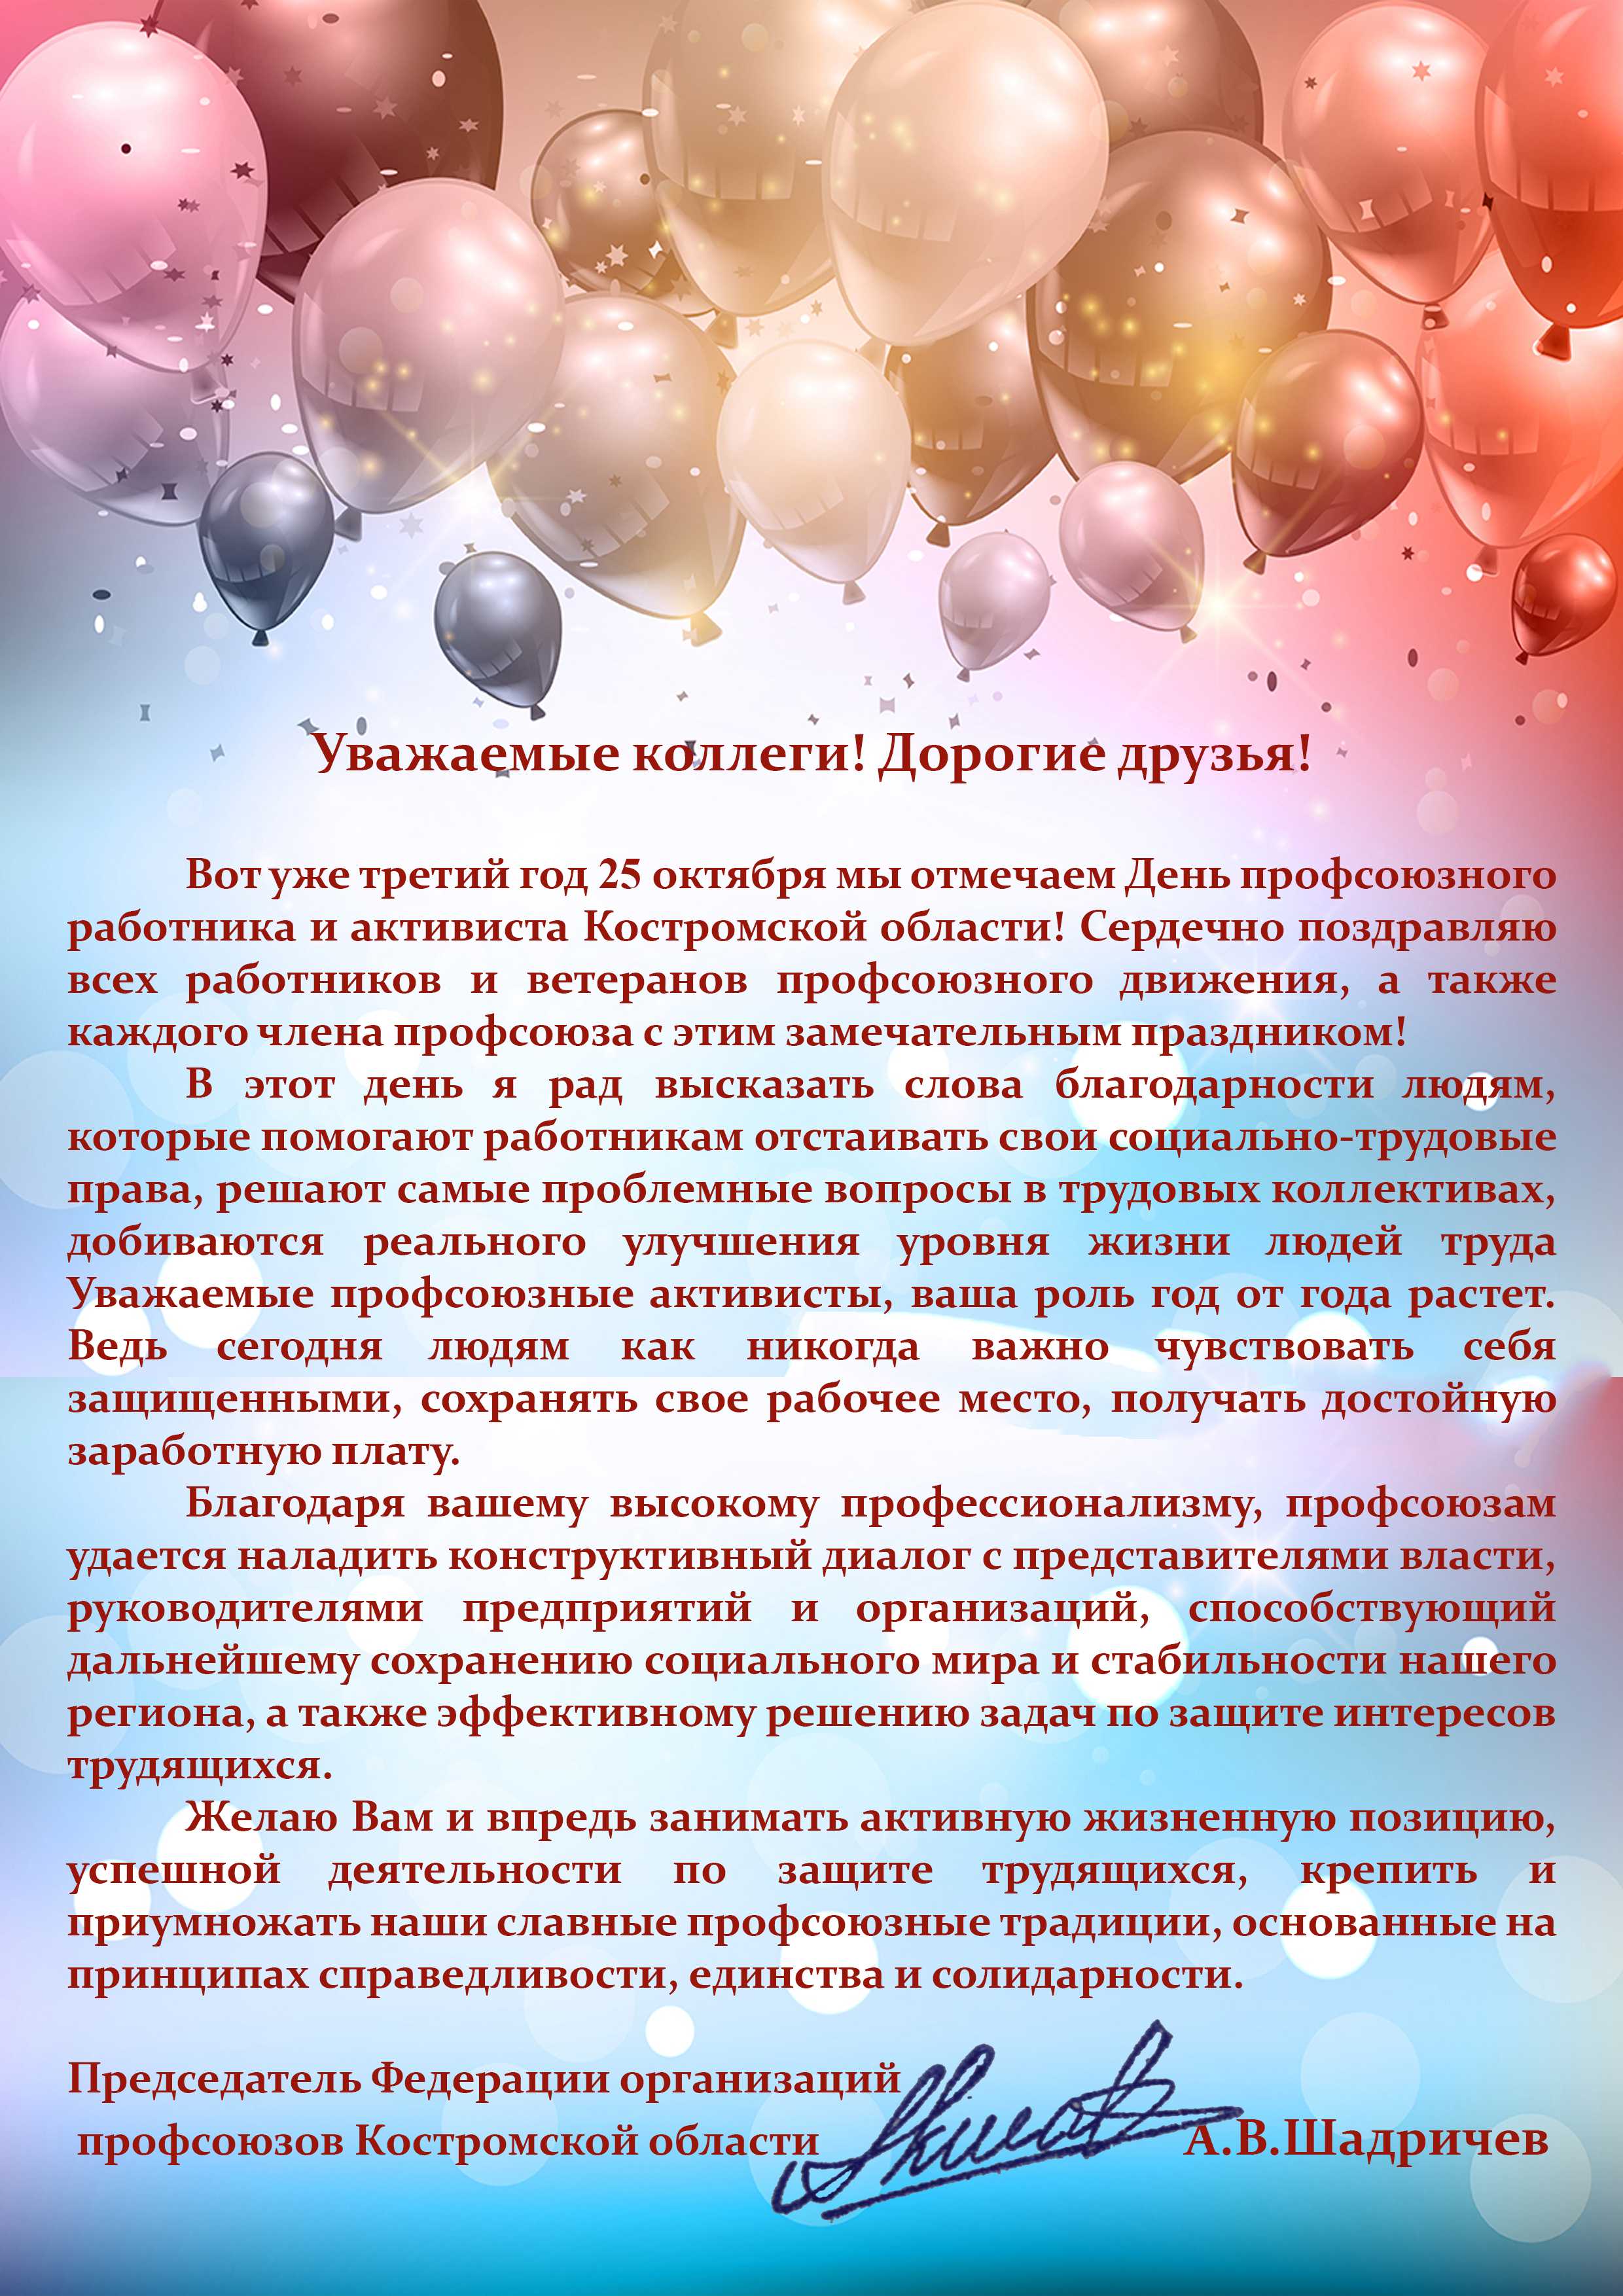 Поздравления с юбилеем организации в прозе официальные | pzdb.ru - поздравления на все случаи жизни